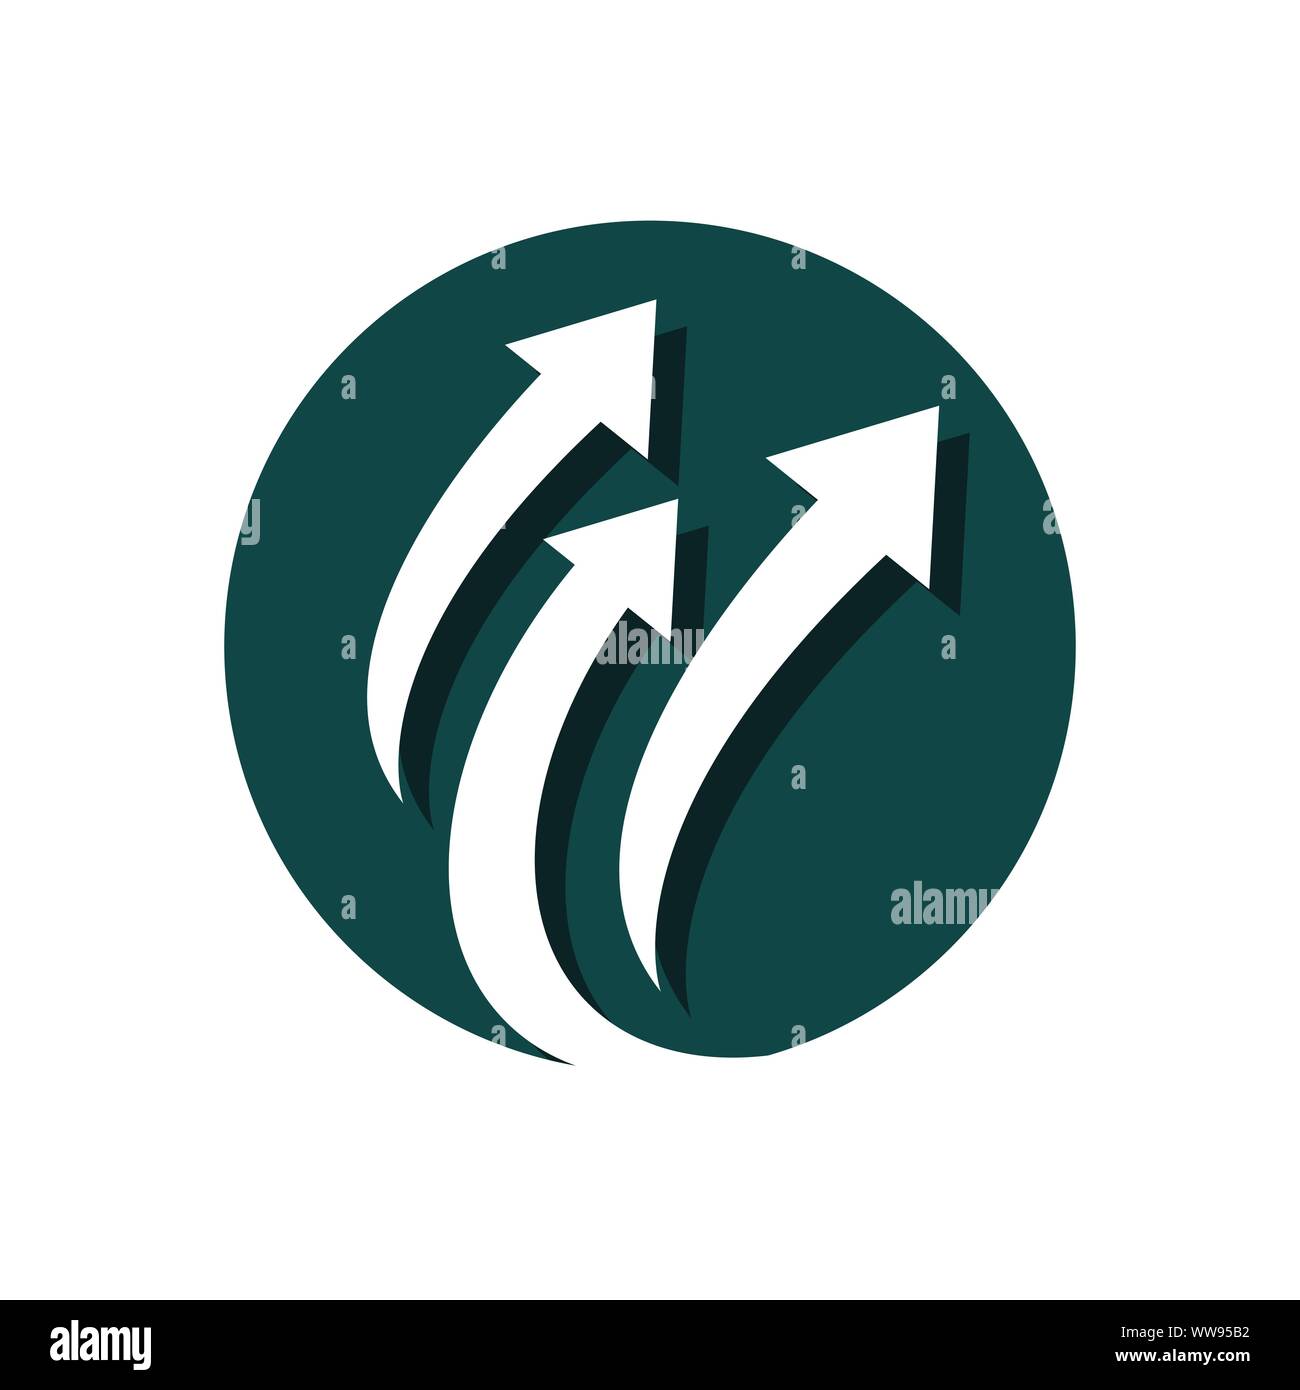 Stylish Creative Abstract Arrow logo vector icon template Stock Vector